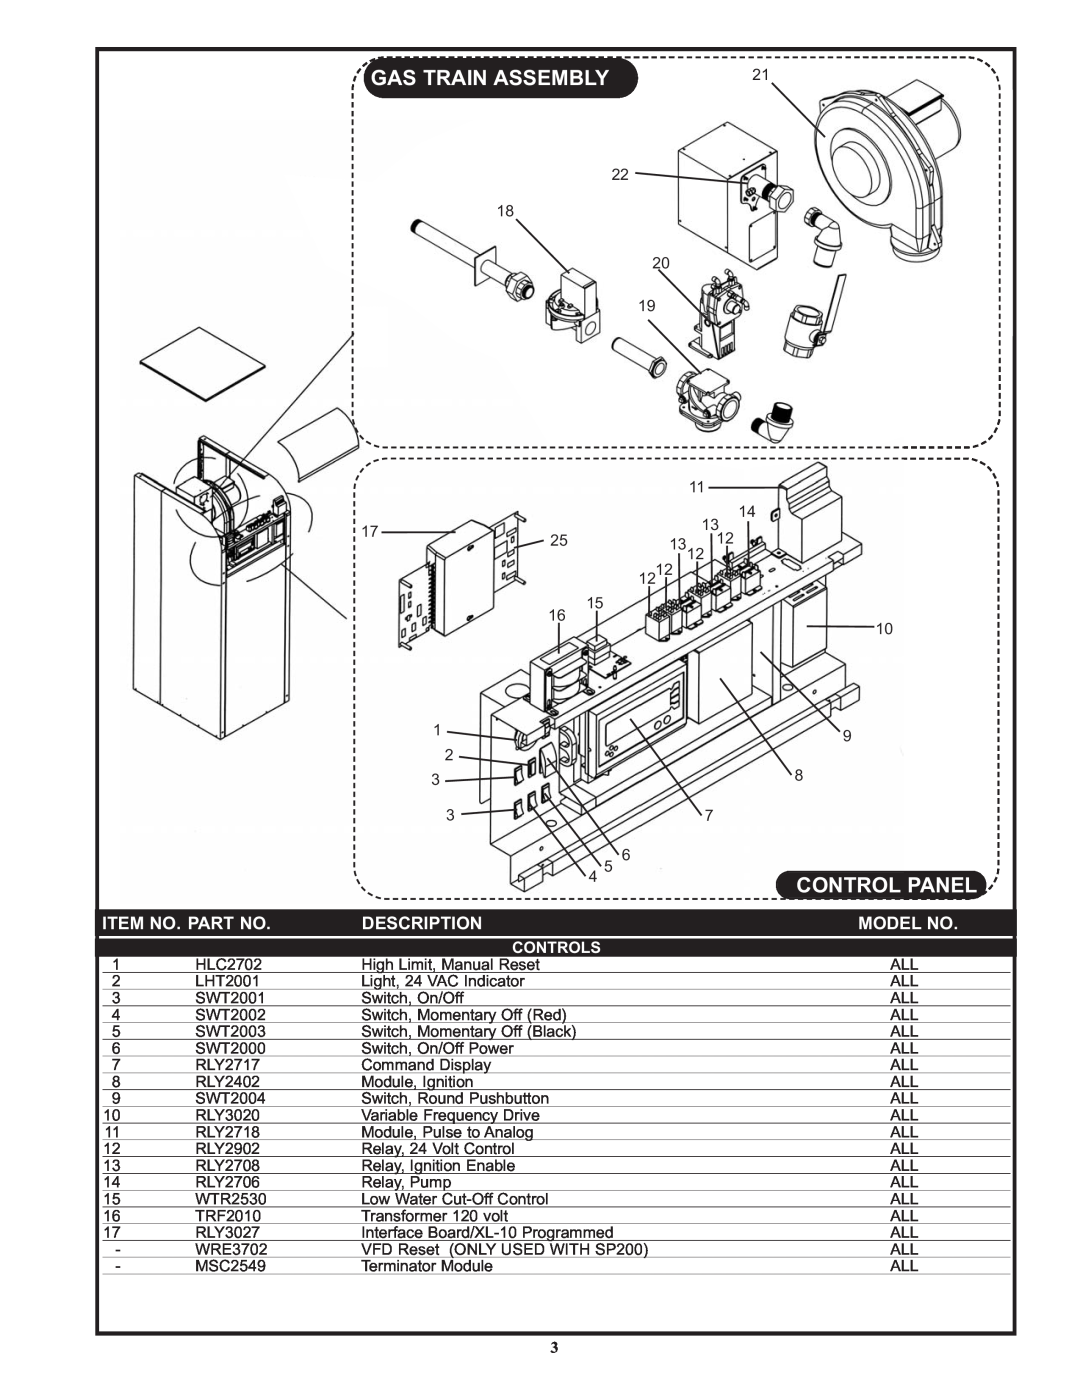 Lochinvar IB/IW 1500, IB/IW 1700 manual Item No. Part No, Description, Model No, Controls, Gas Train Assembly, Control Panel 